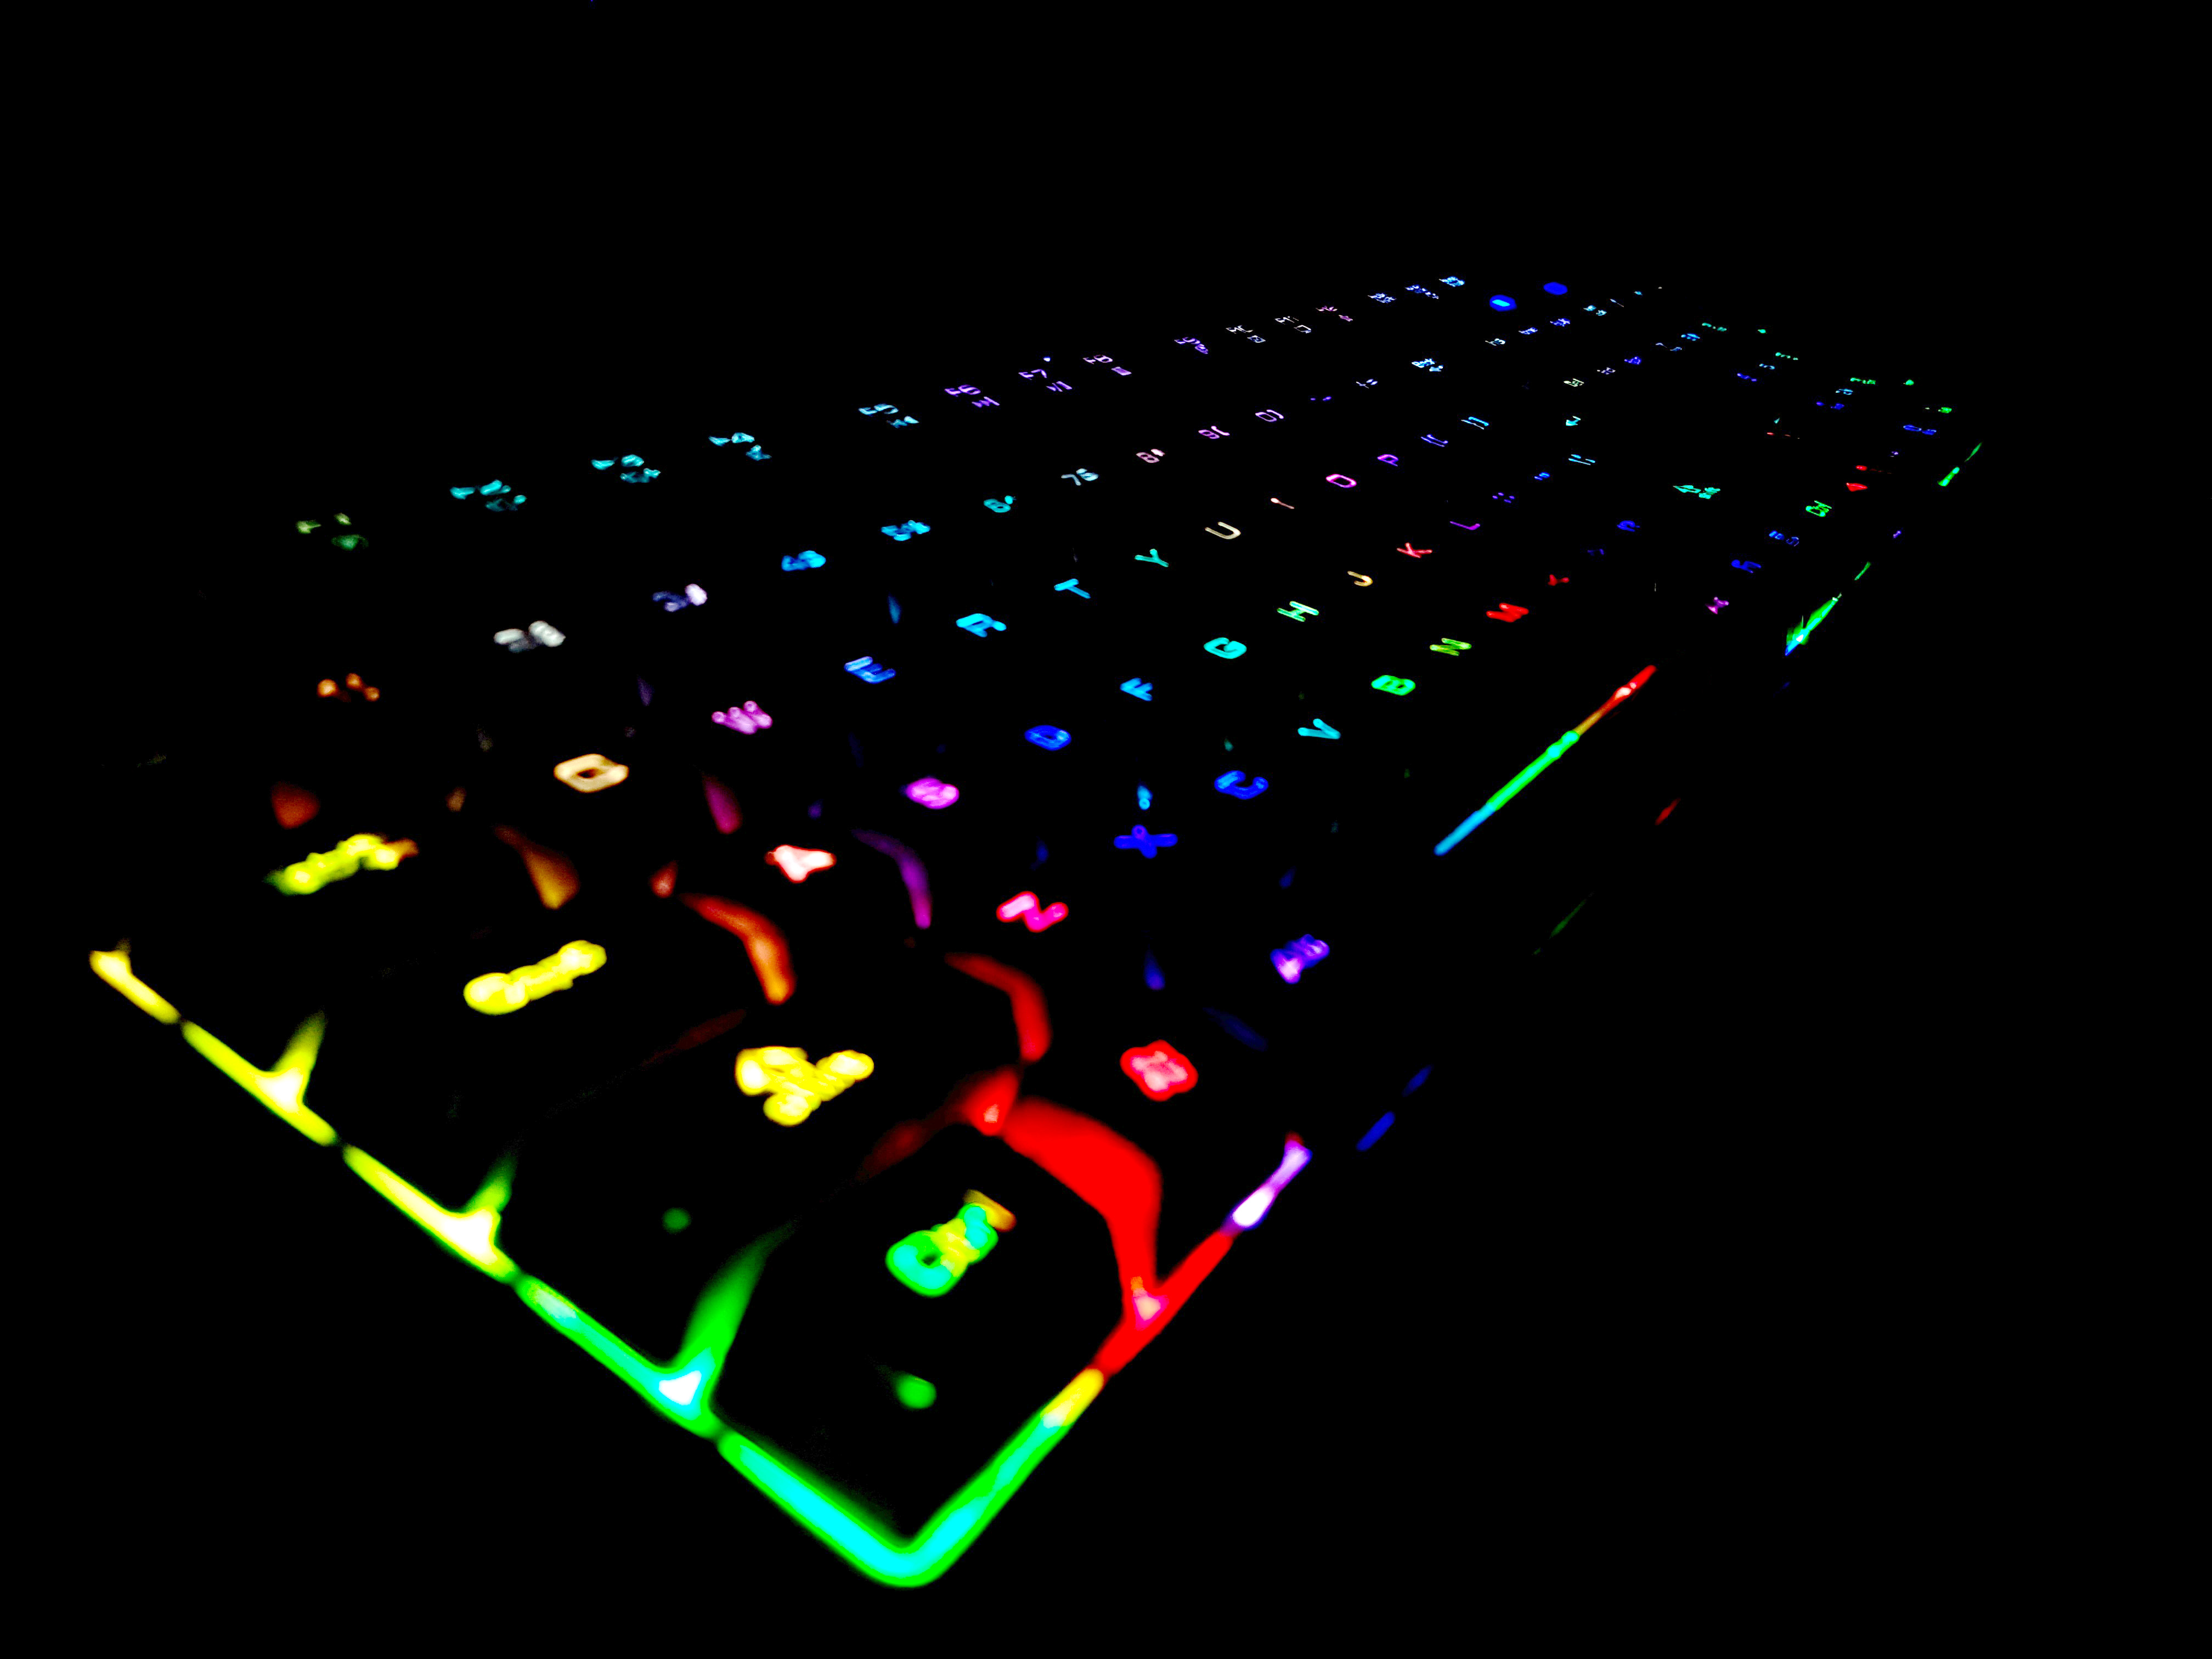 keyboard, dark, multicolored, motley, backlight, illumination, key